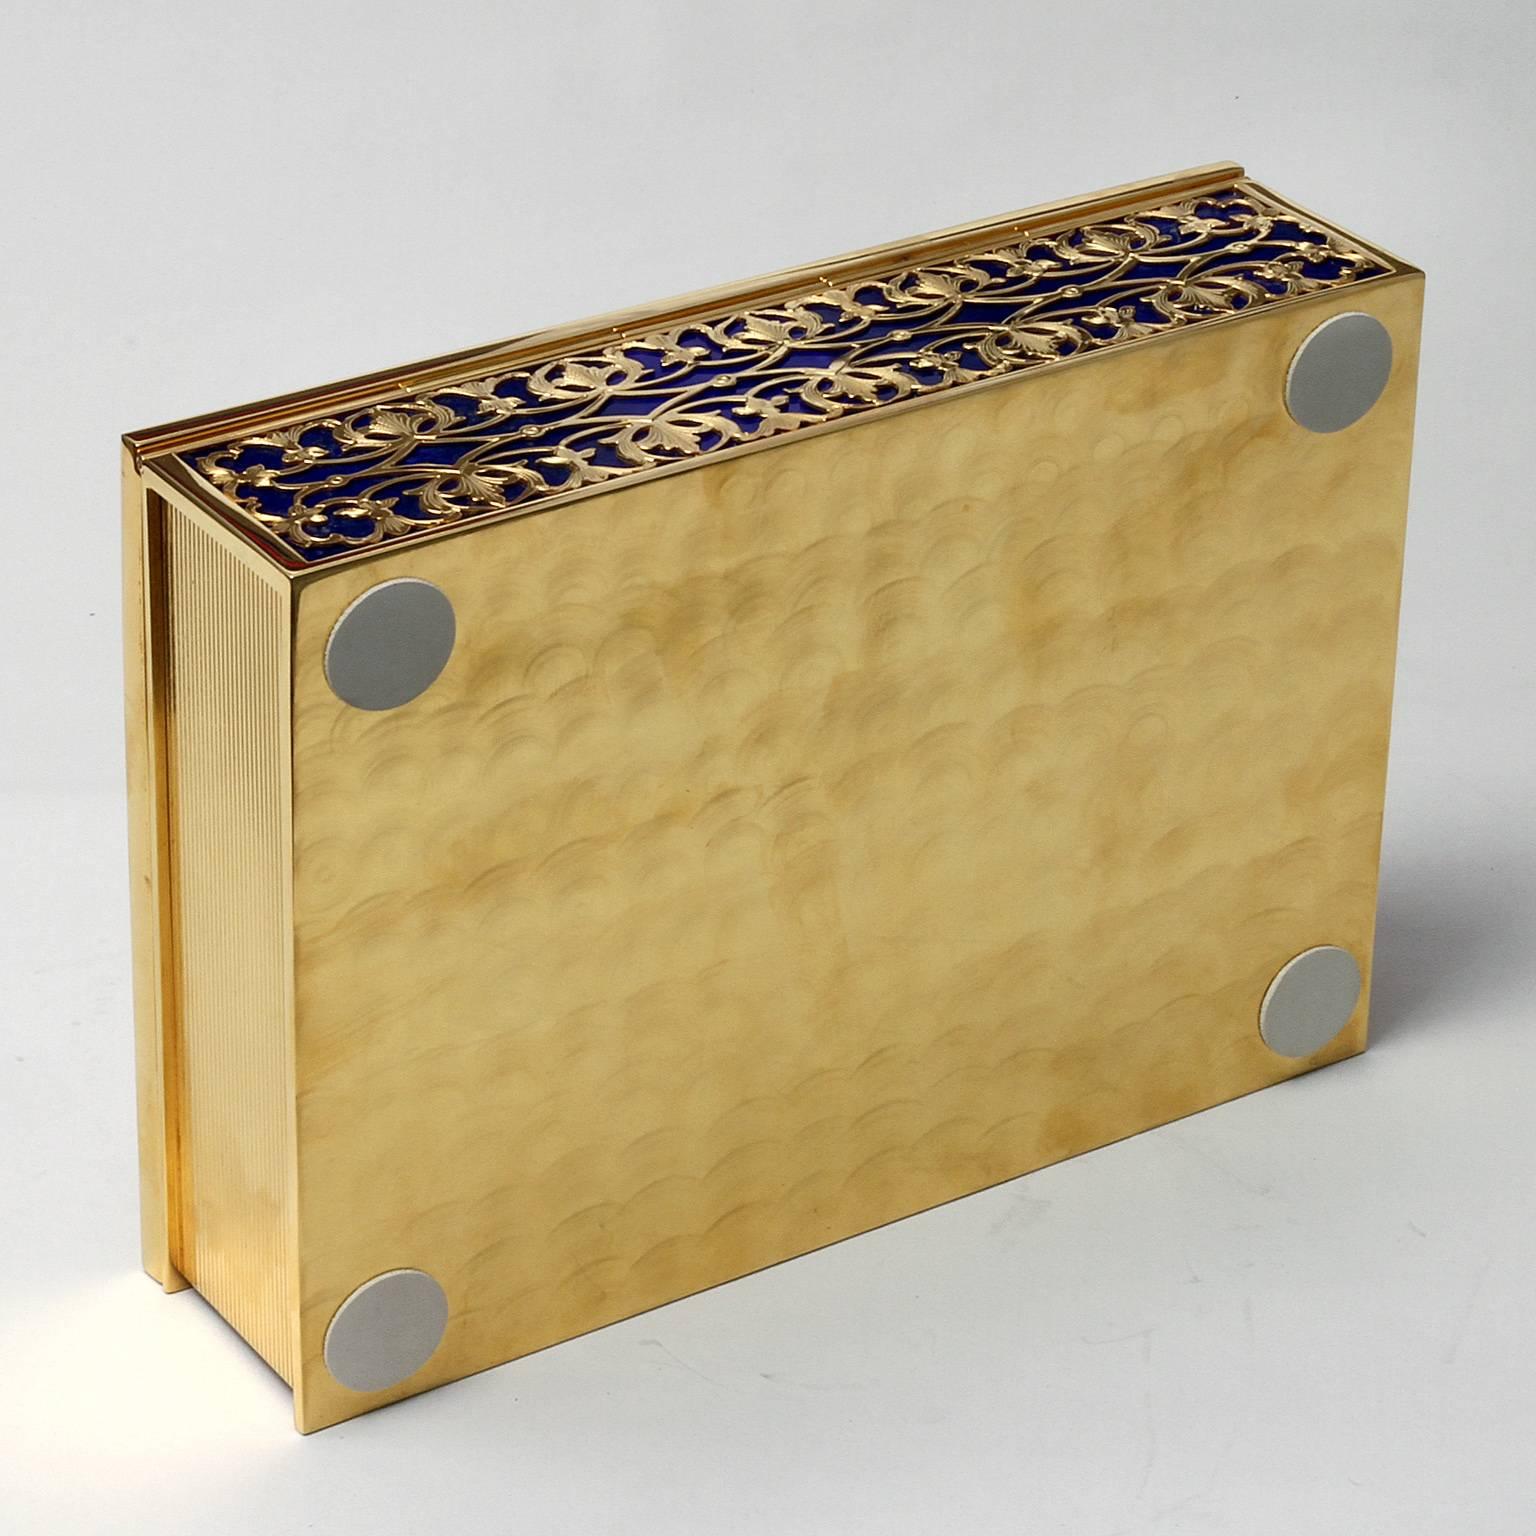 Photo Frames’ box Gold  Silver and Lapislazzuli In Good Condition For Sale In Sarezzo, IT